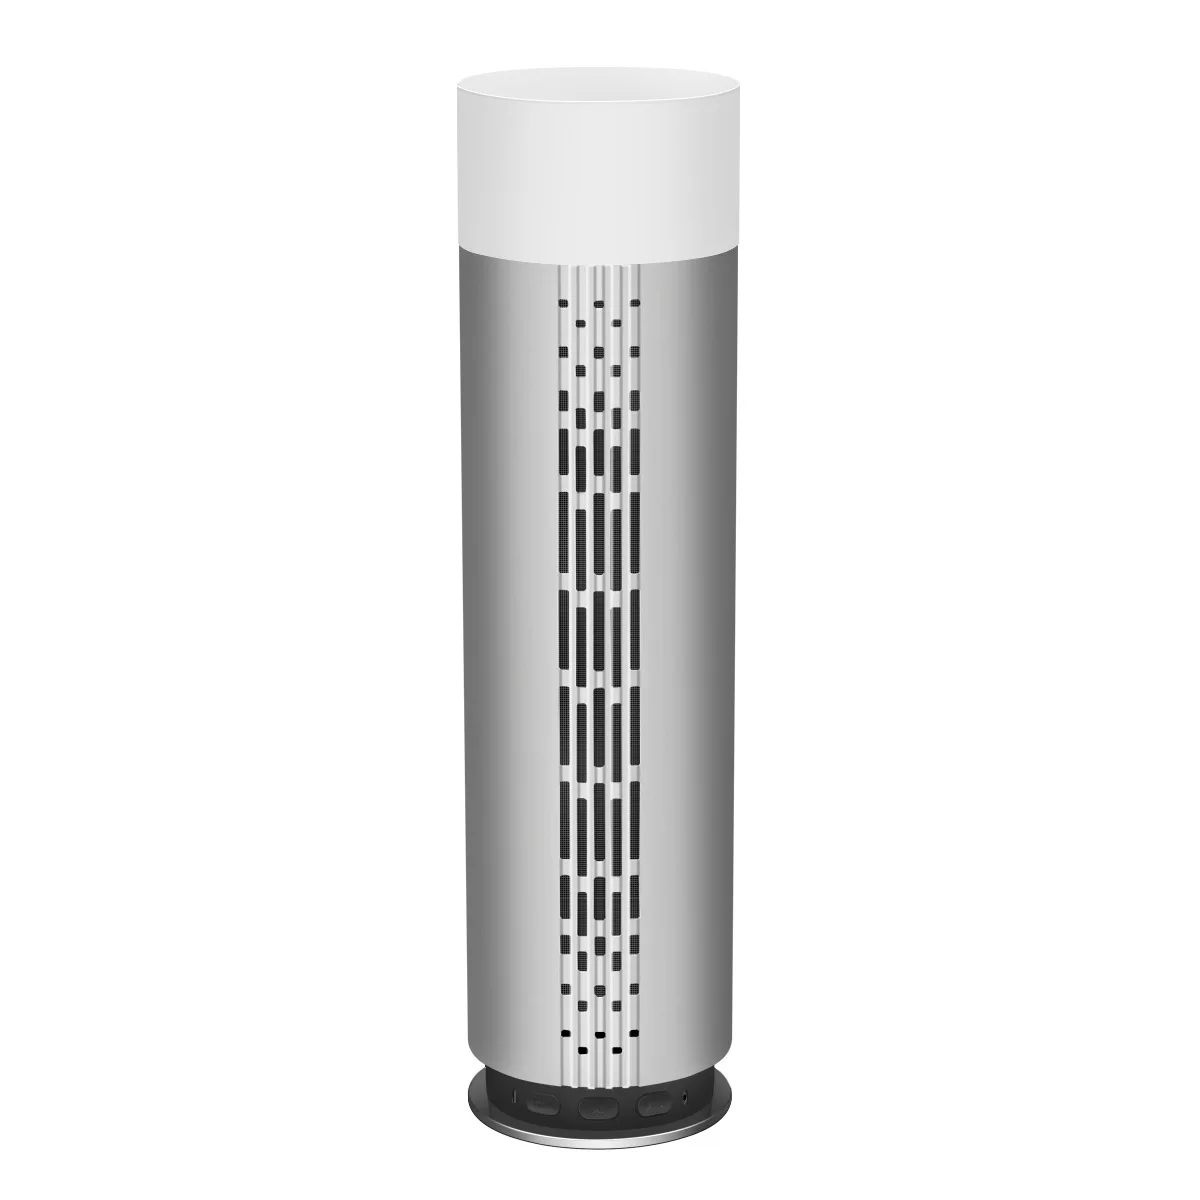 Z3 интеллектуальная bluetooth-колонка фонари, индукционные лампы стерео большой Батарея Hi-Fi качество звука светодиодный интеллектуальная